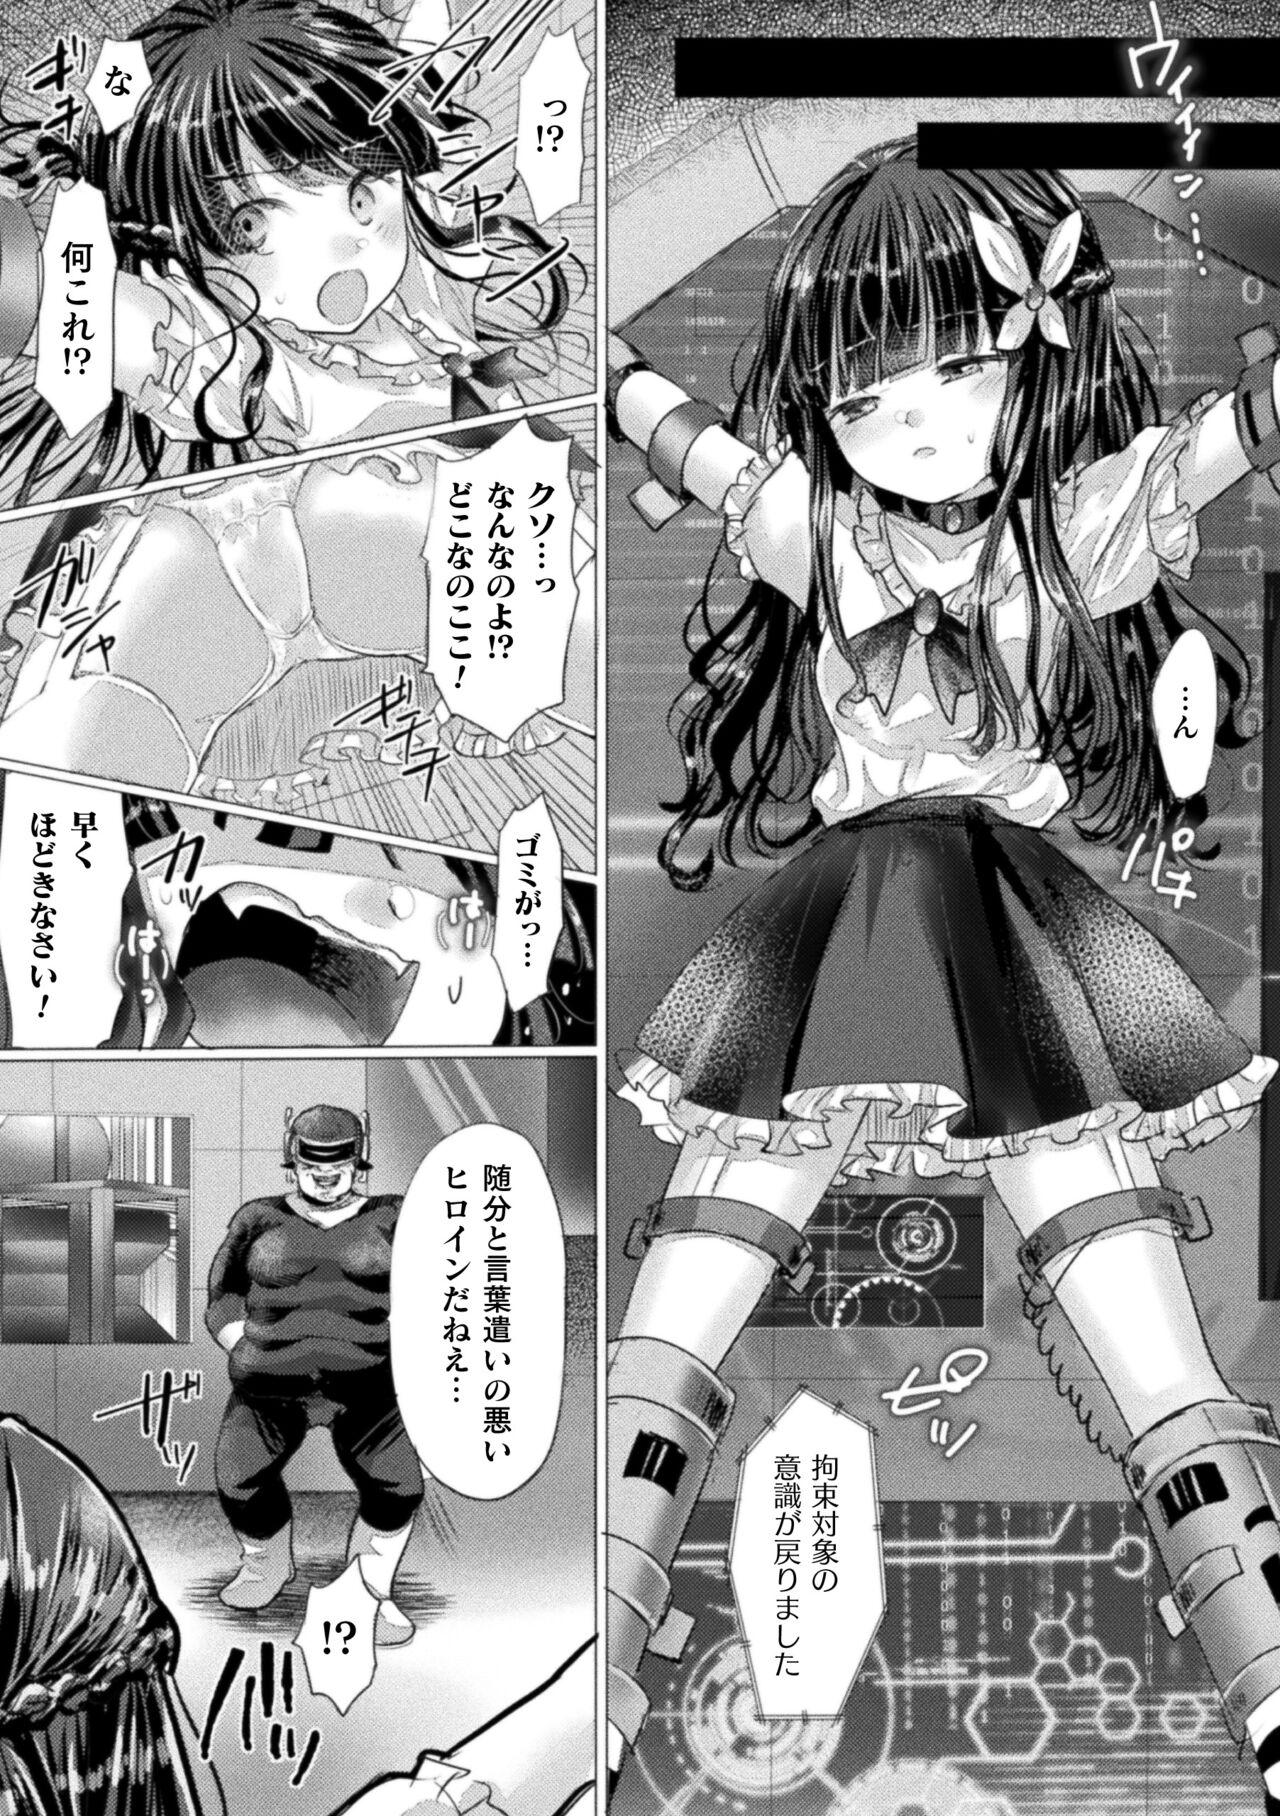 2D Comic Magazine Mesugaki Henshin Heroine Kikaikan Seisai Hijou no Wakarase Machine de Renzoku Loli Acme Vol. 3 49